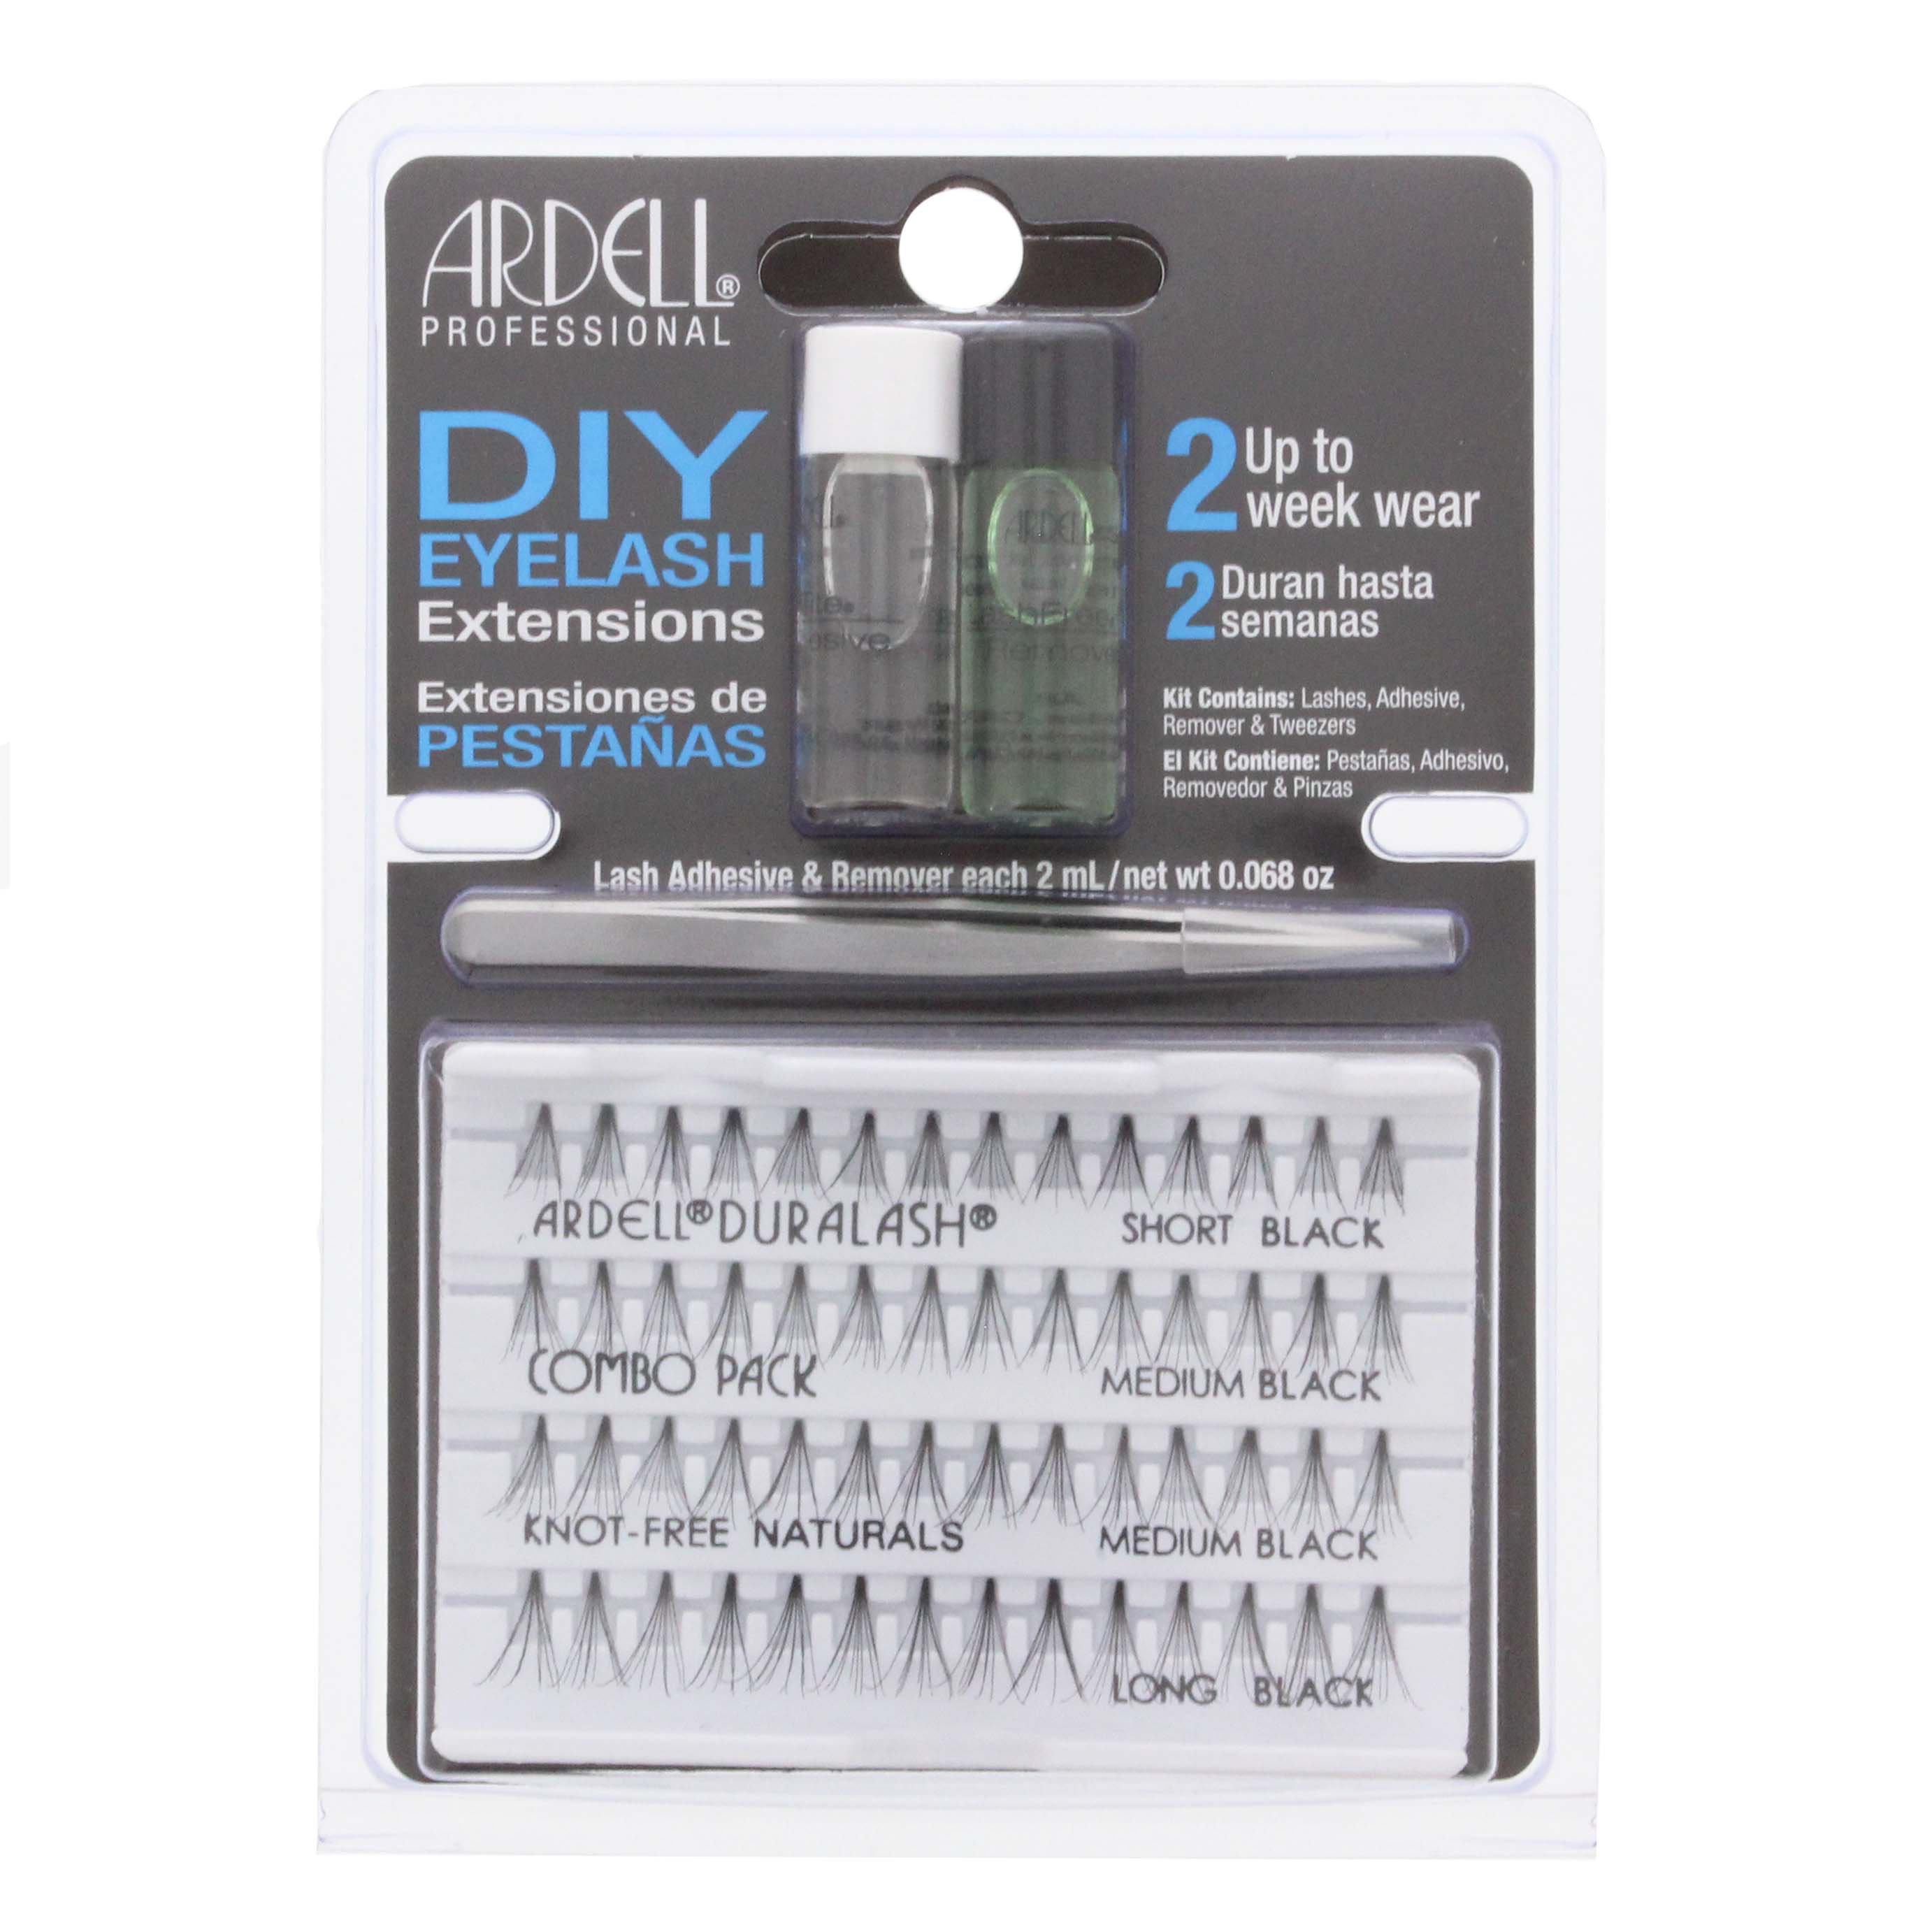 Ardell Diy Eyelash Extensions Kit Makeup At H E B